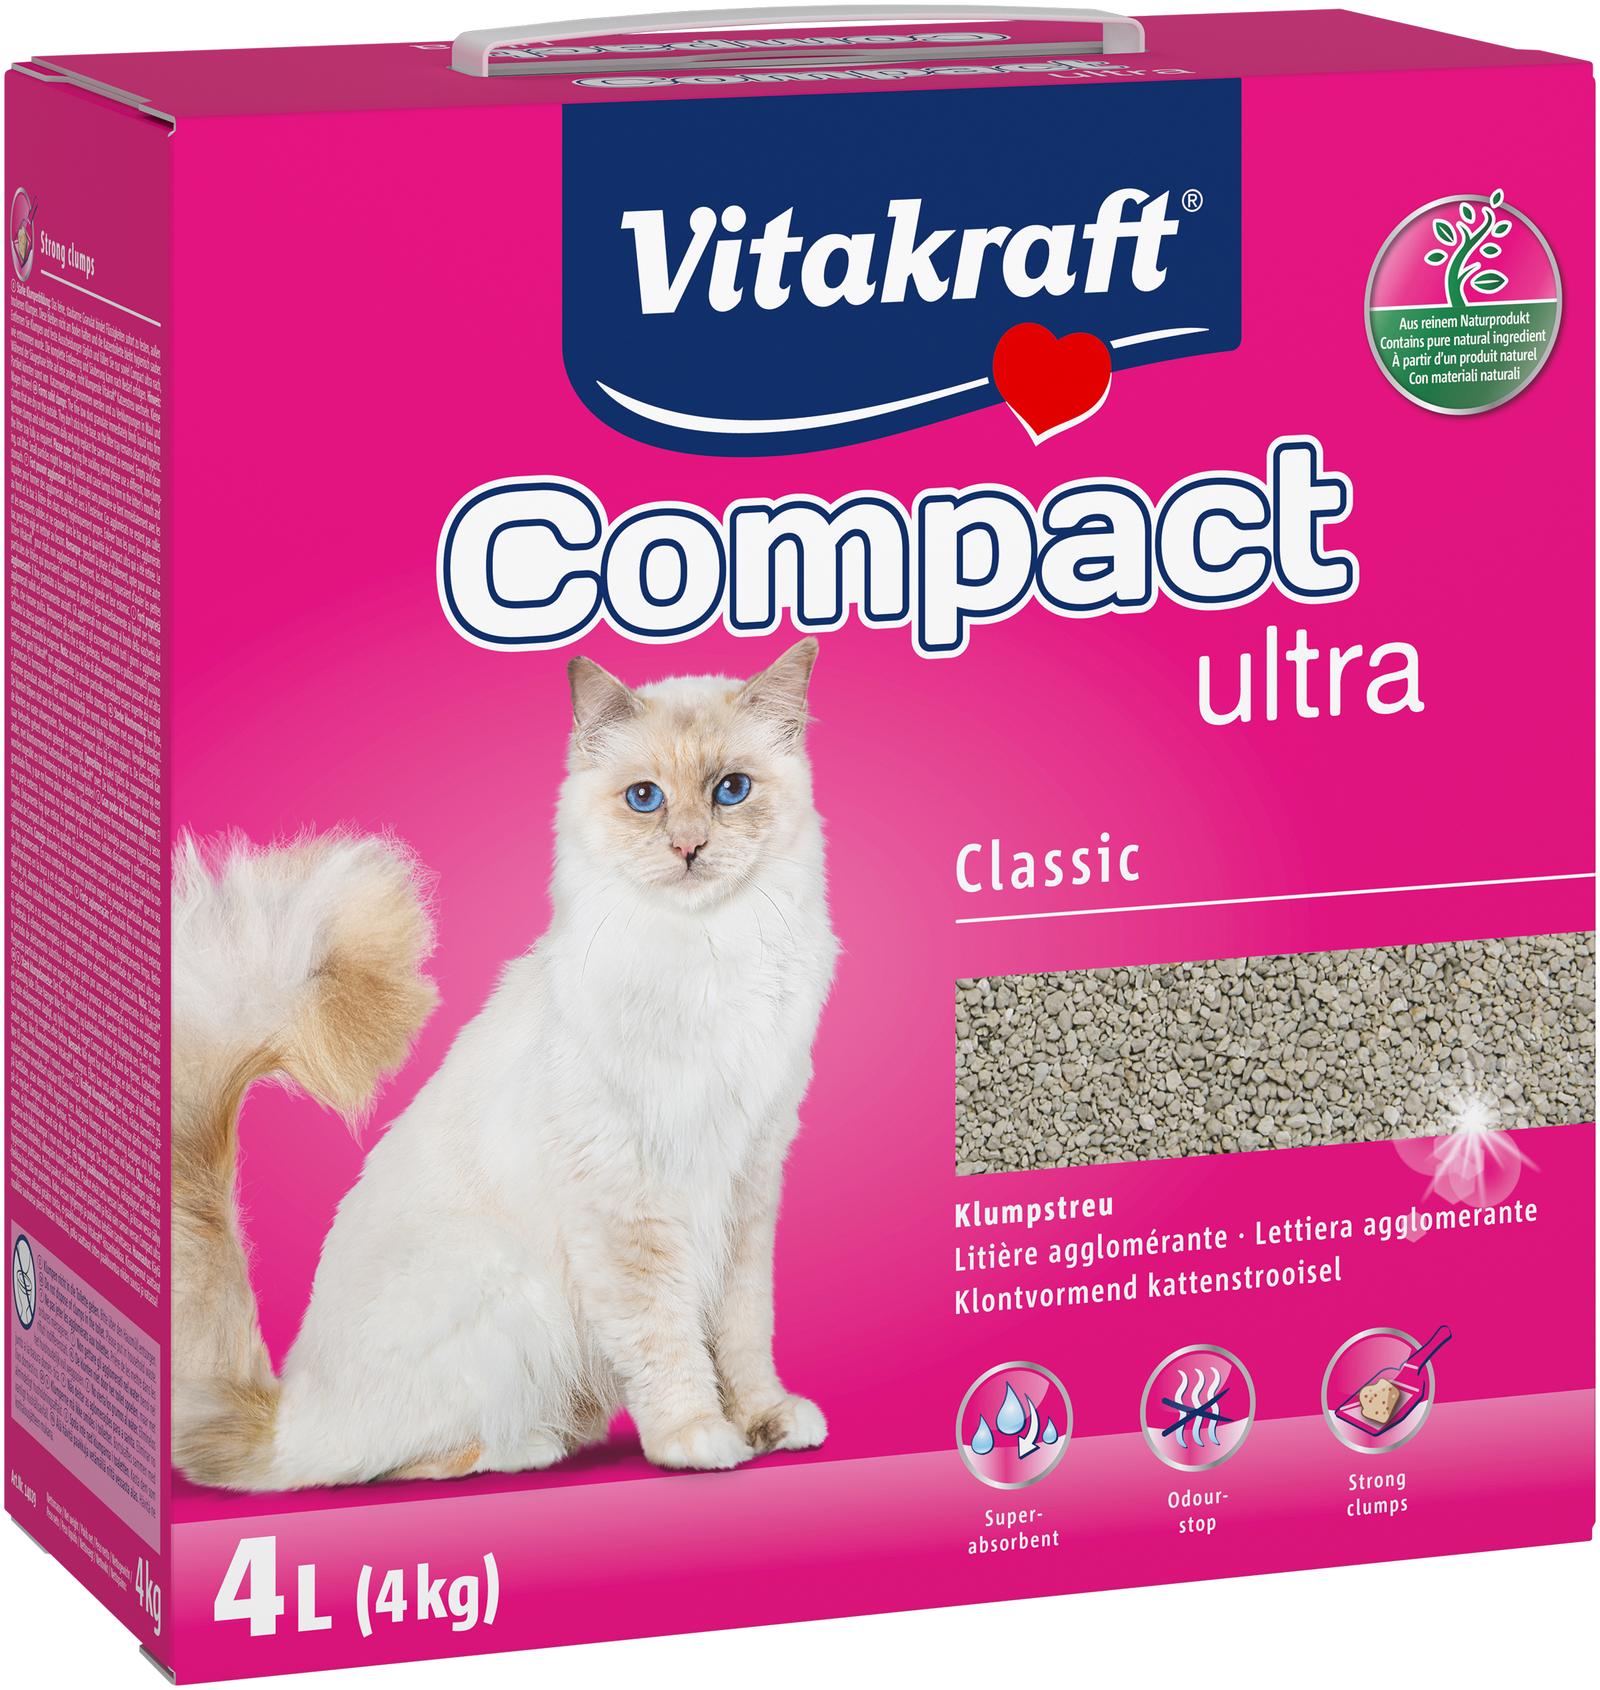 Vitakraft compact ultra 4kg litiere agglomerante pour chats offre à 7,79€ sur Tom & Co